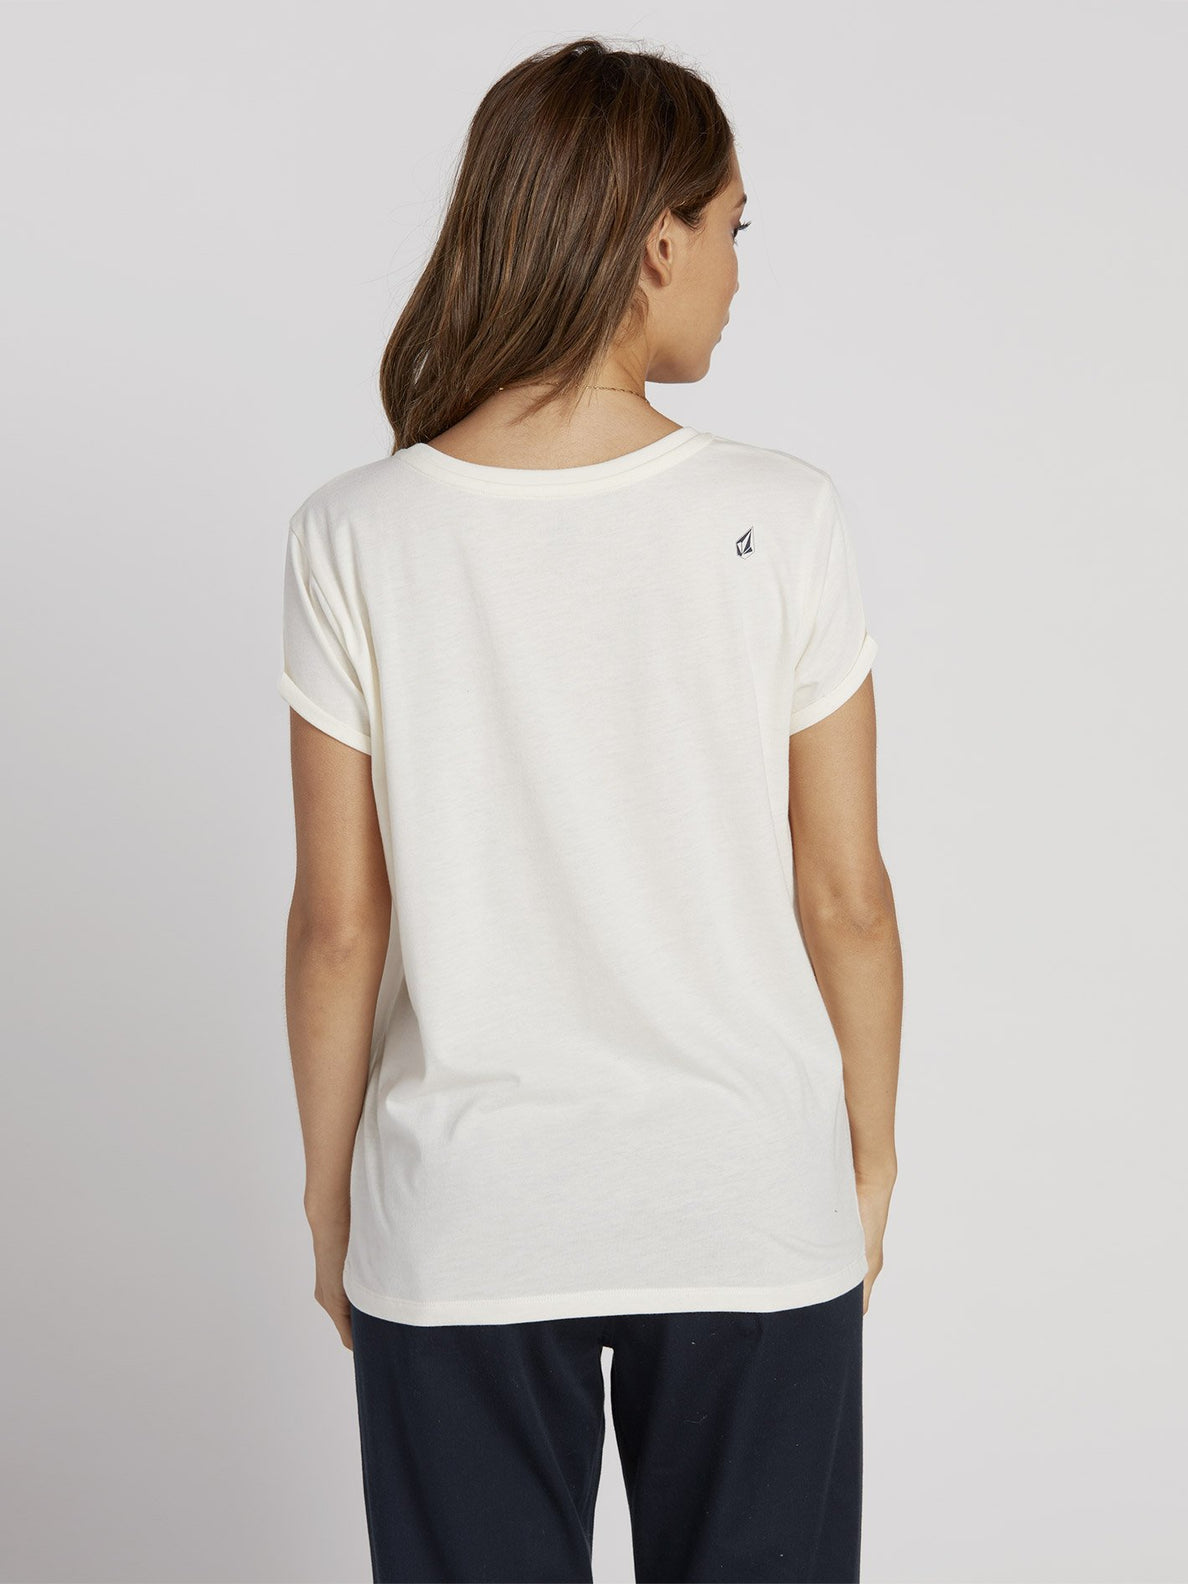 Radical Daze T-shirt - Star White (B3531950_SWH) [B]